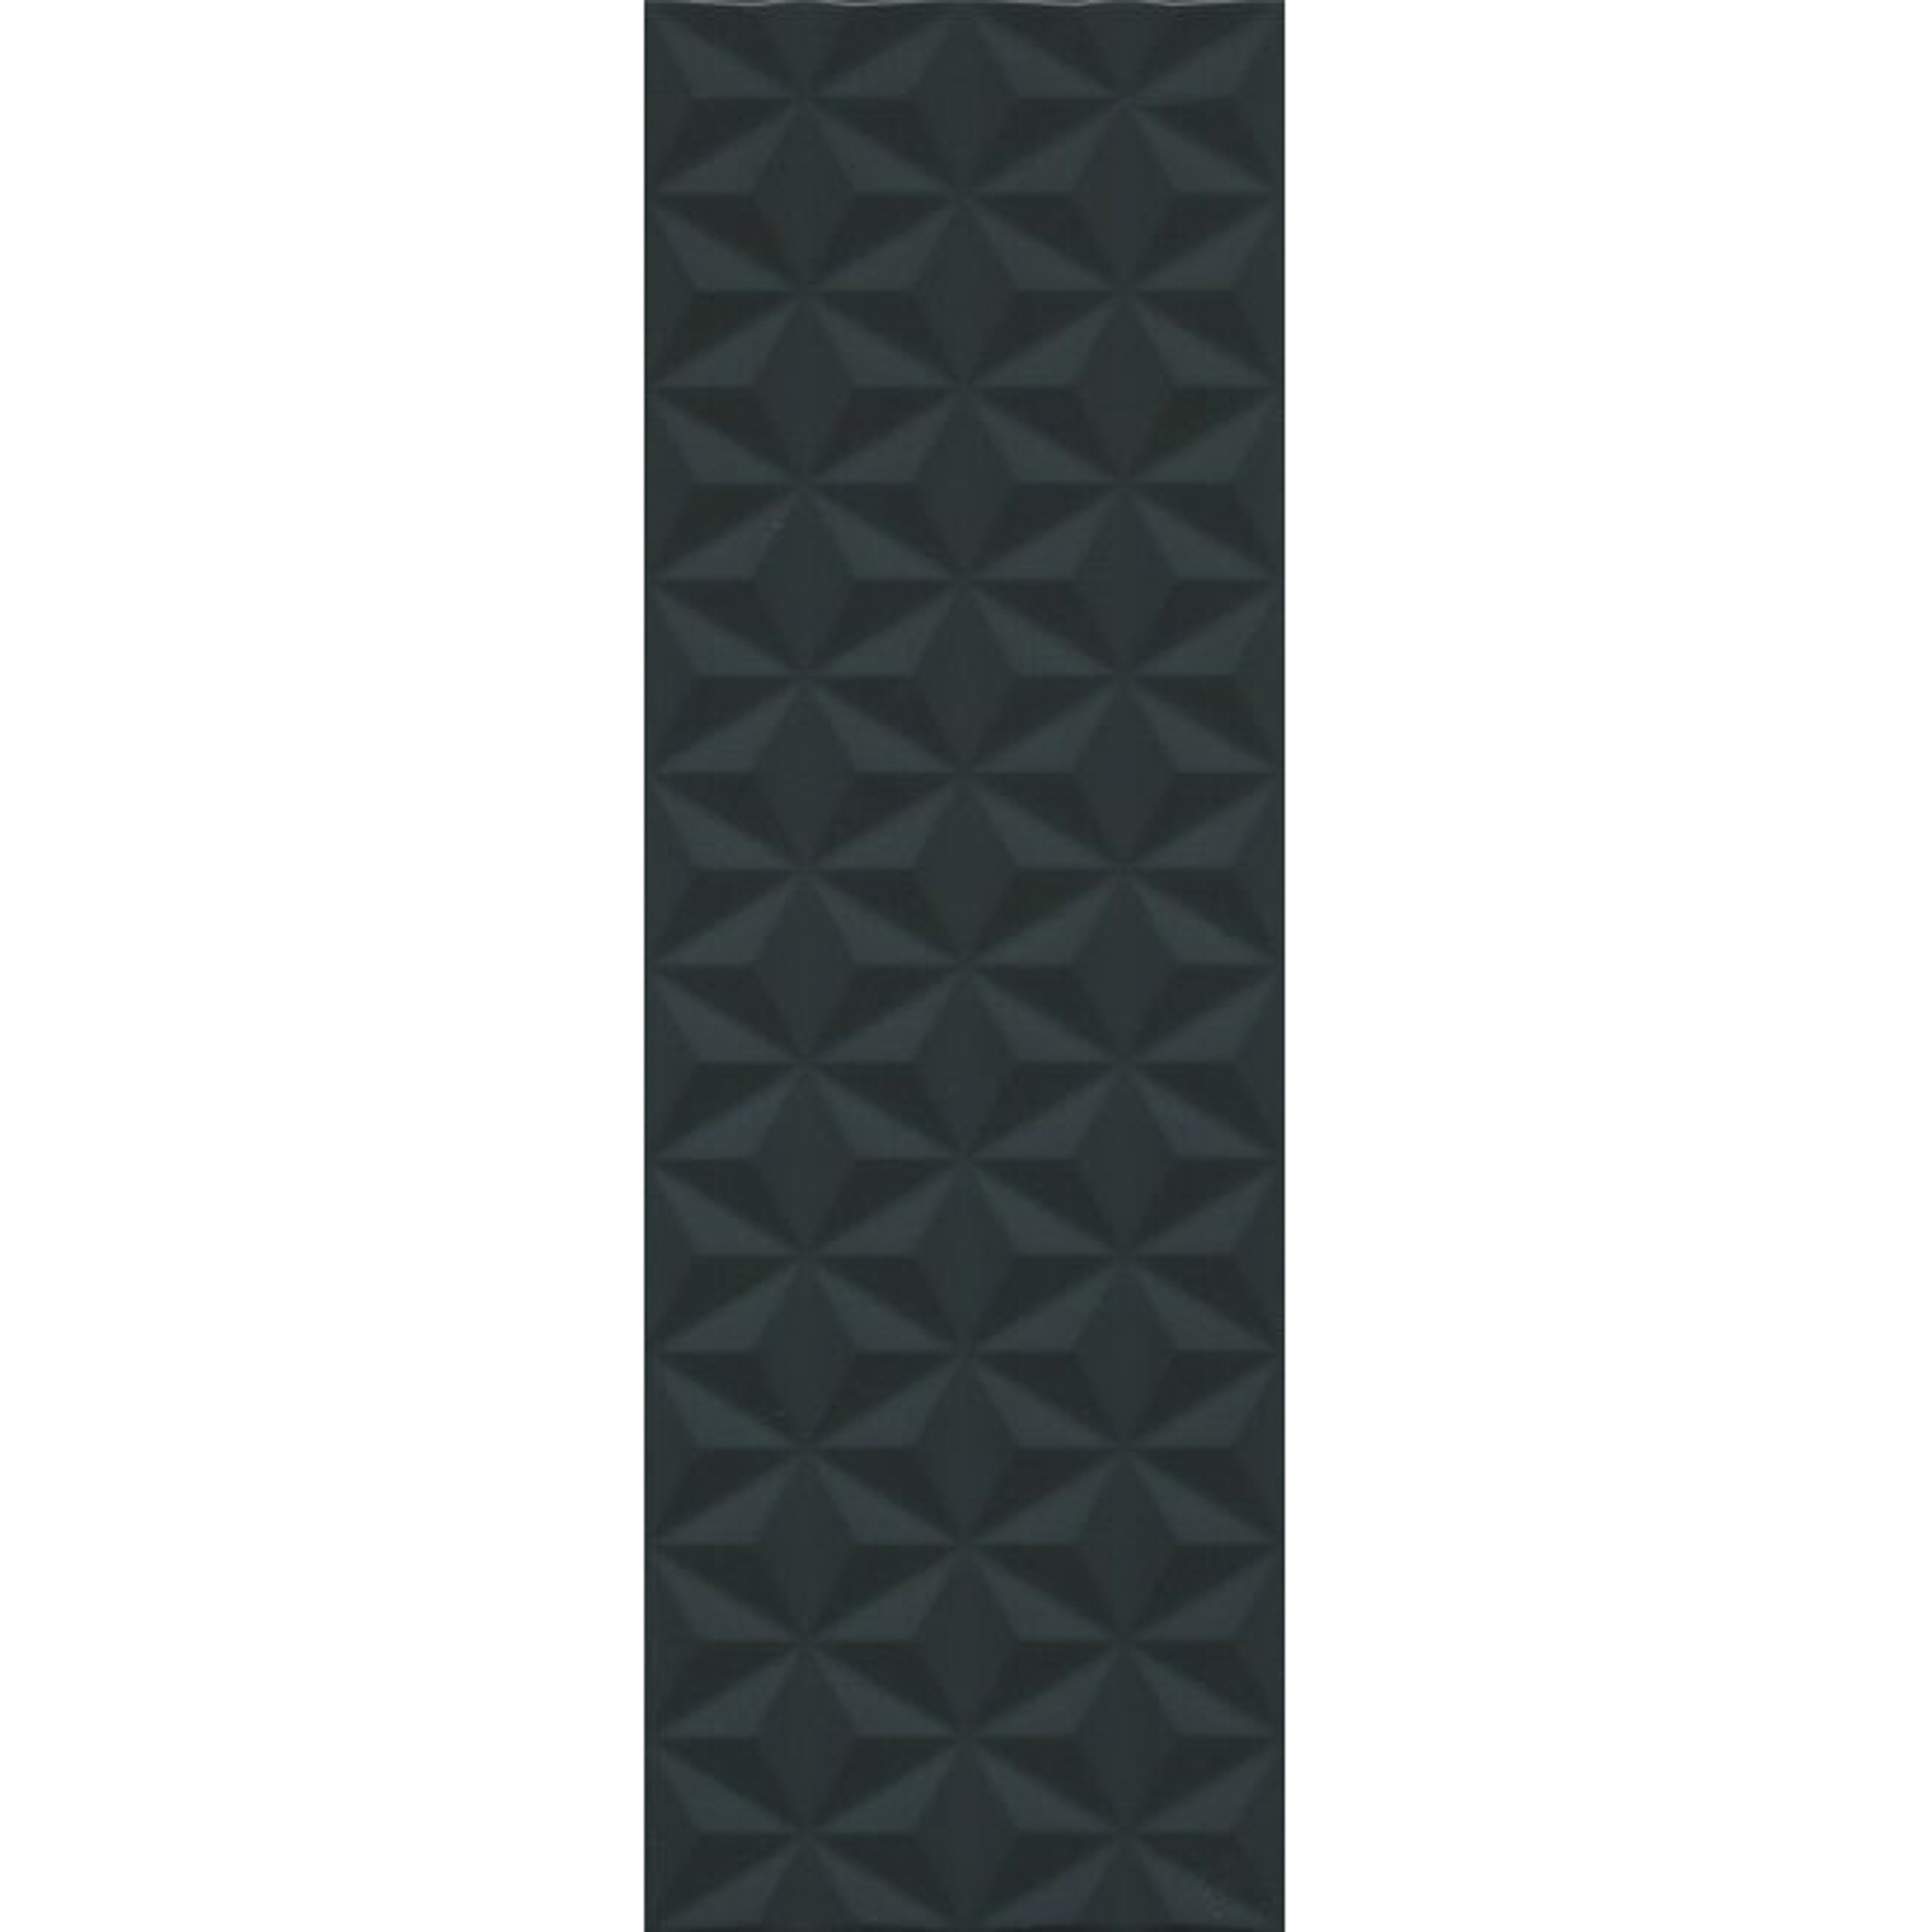 Плитка Kerama Marazzi Диагональ черная структура 25x75 см 12121R плитка облицовочная unitile чарли черная 400x250x8 мм 14 шт 1 4 кв м